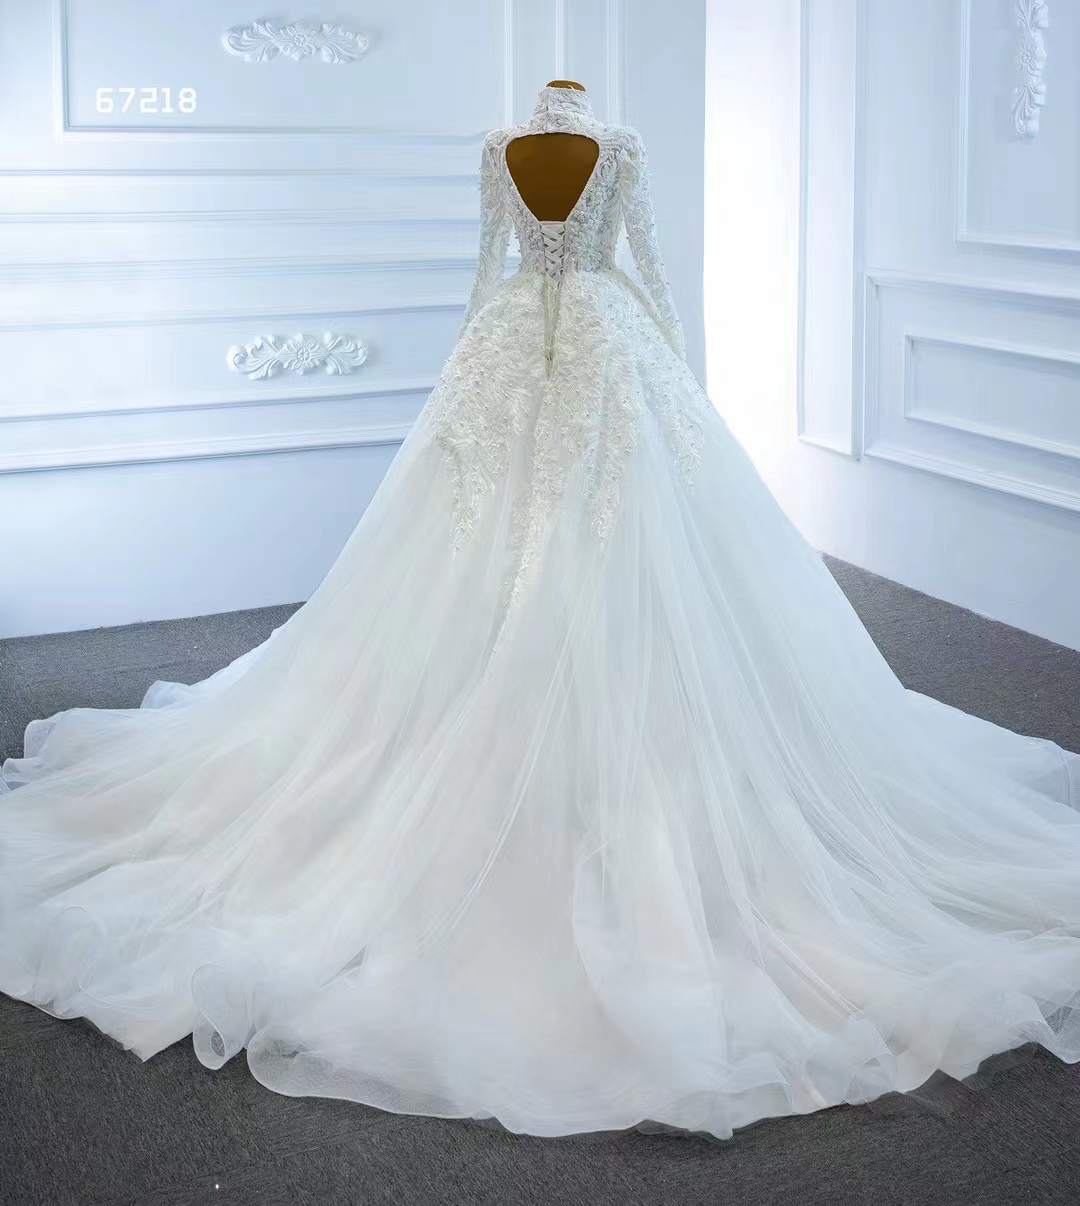 Sjöjungfrun bröllopsklänning underbar höghals långärmad spets lace löstagbar tåg brudklänningar SM67218